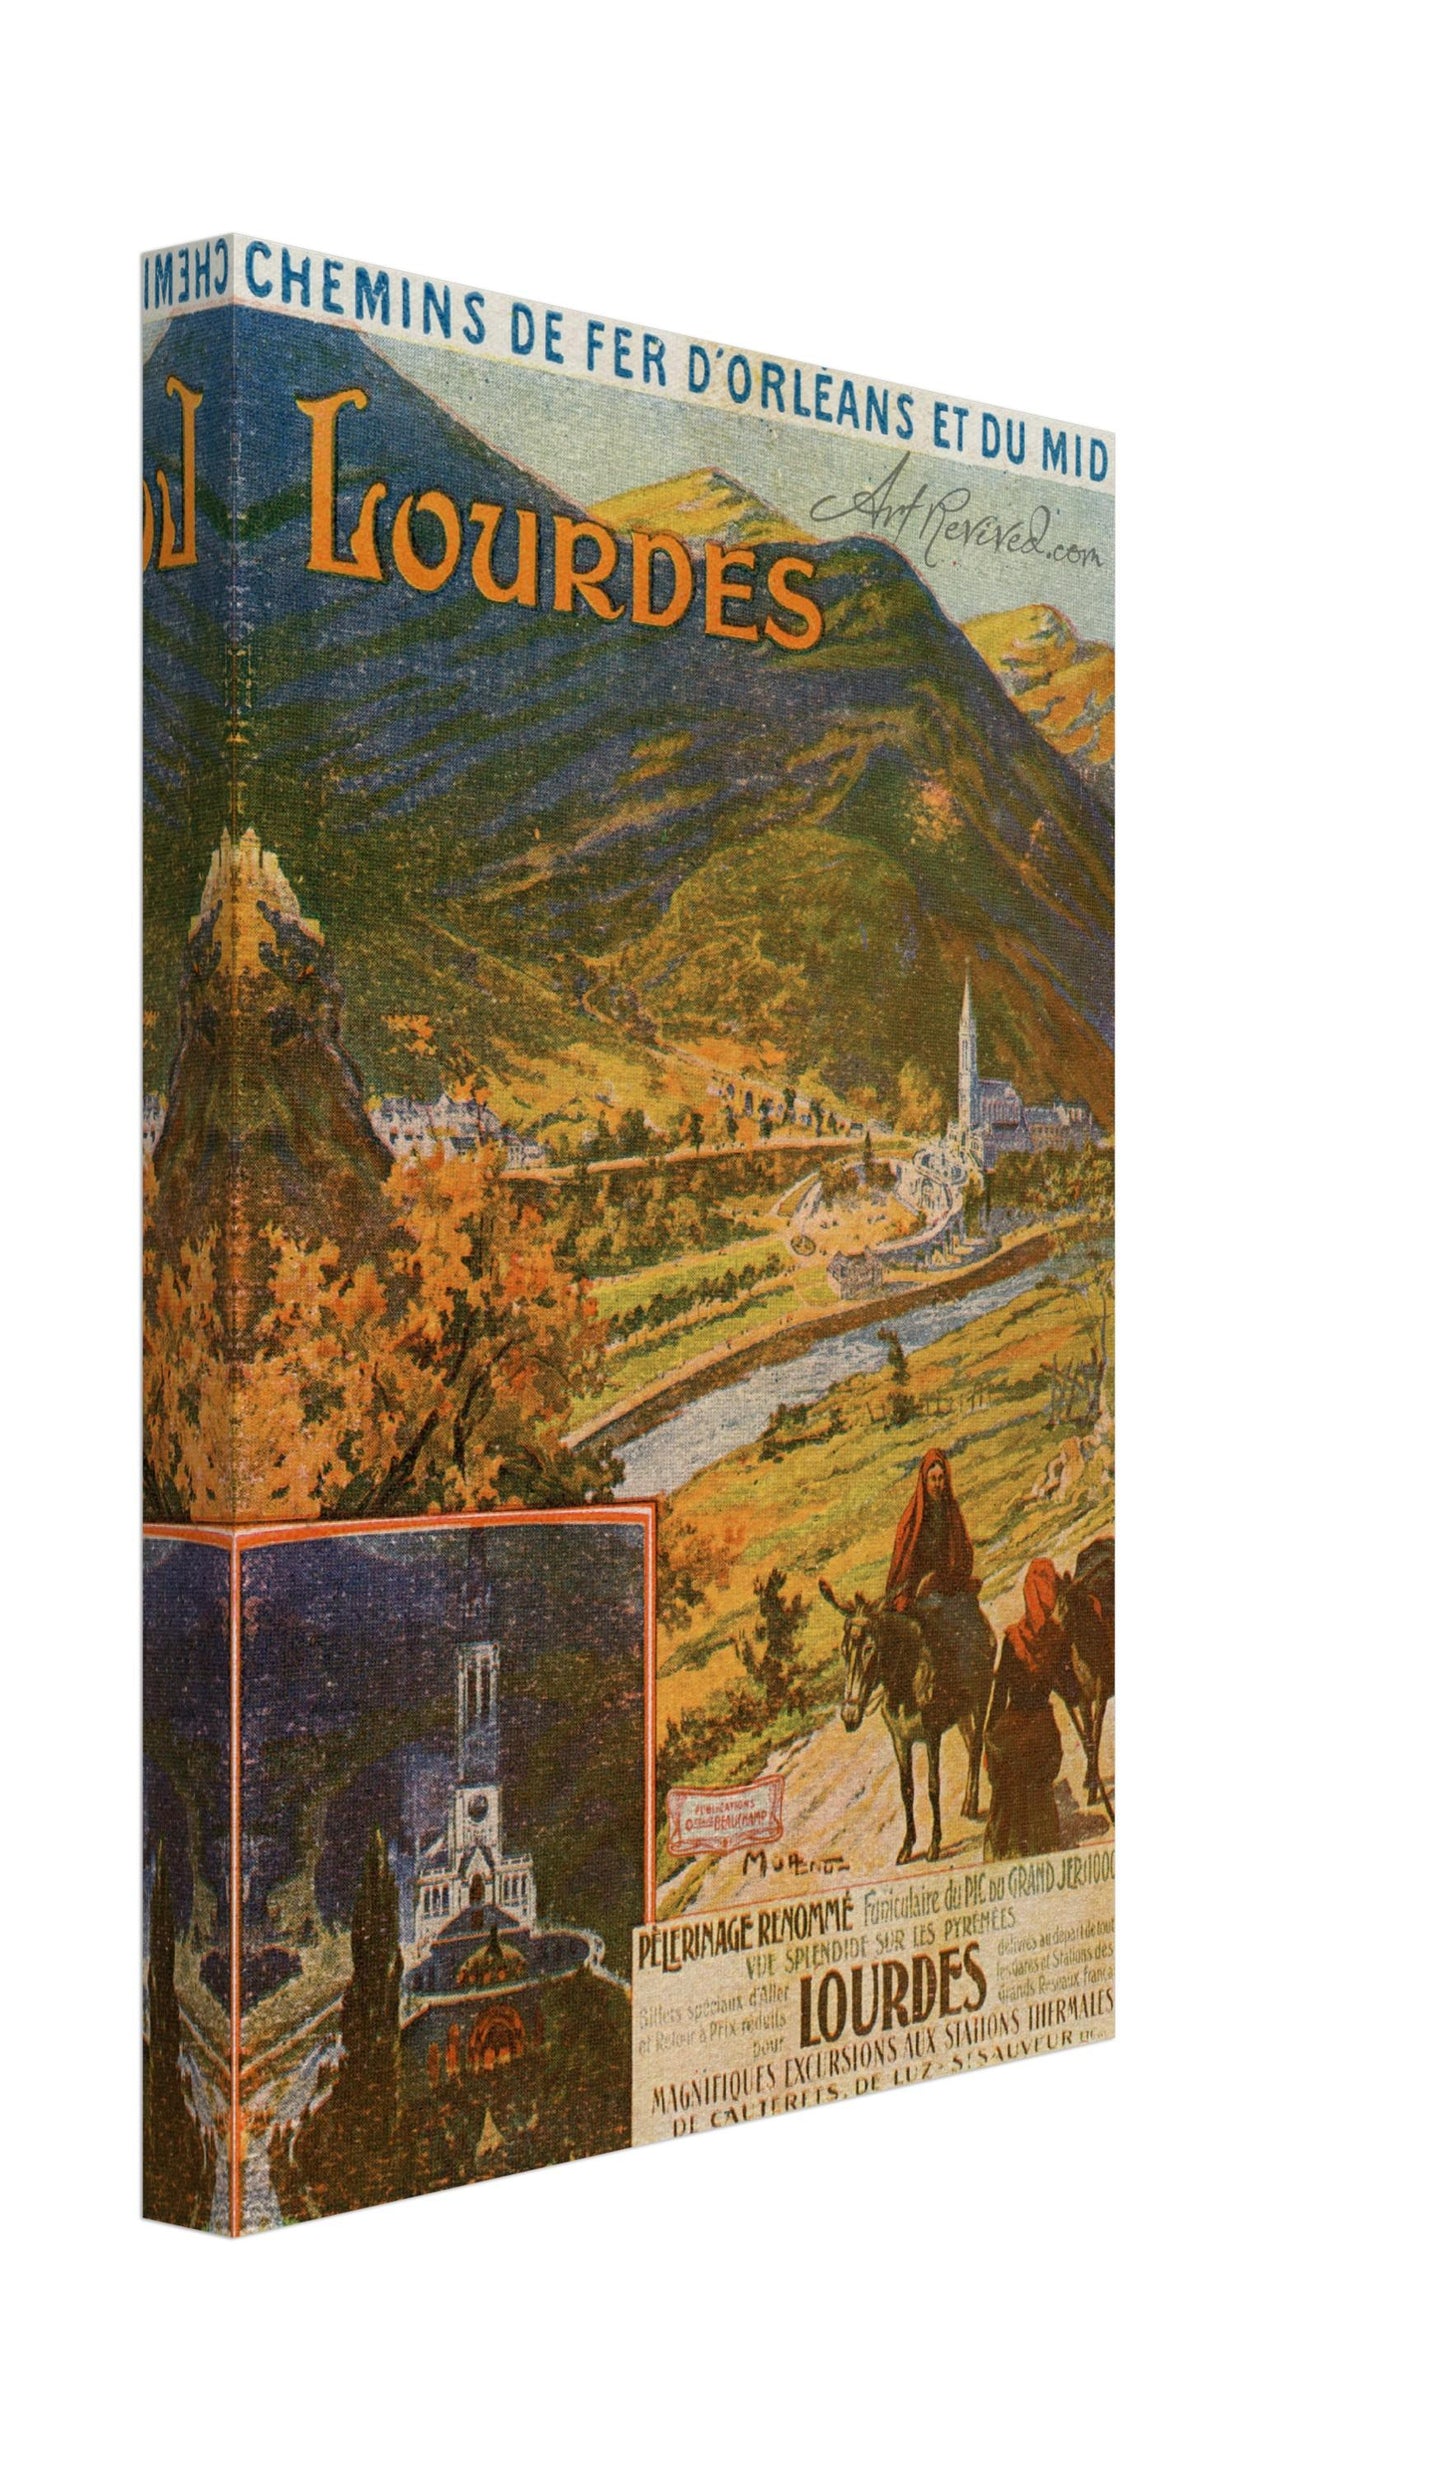 Chemin de fer l'Orleans et du midi Lourdes